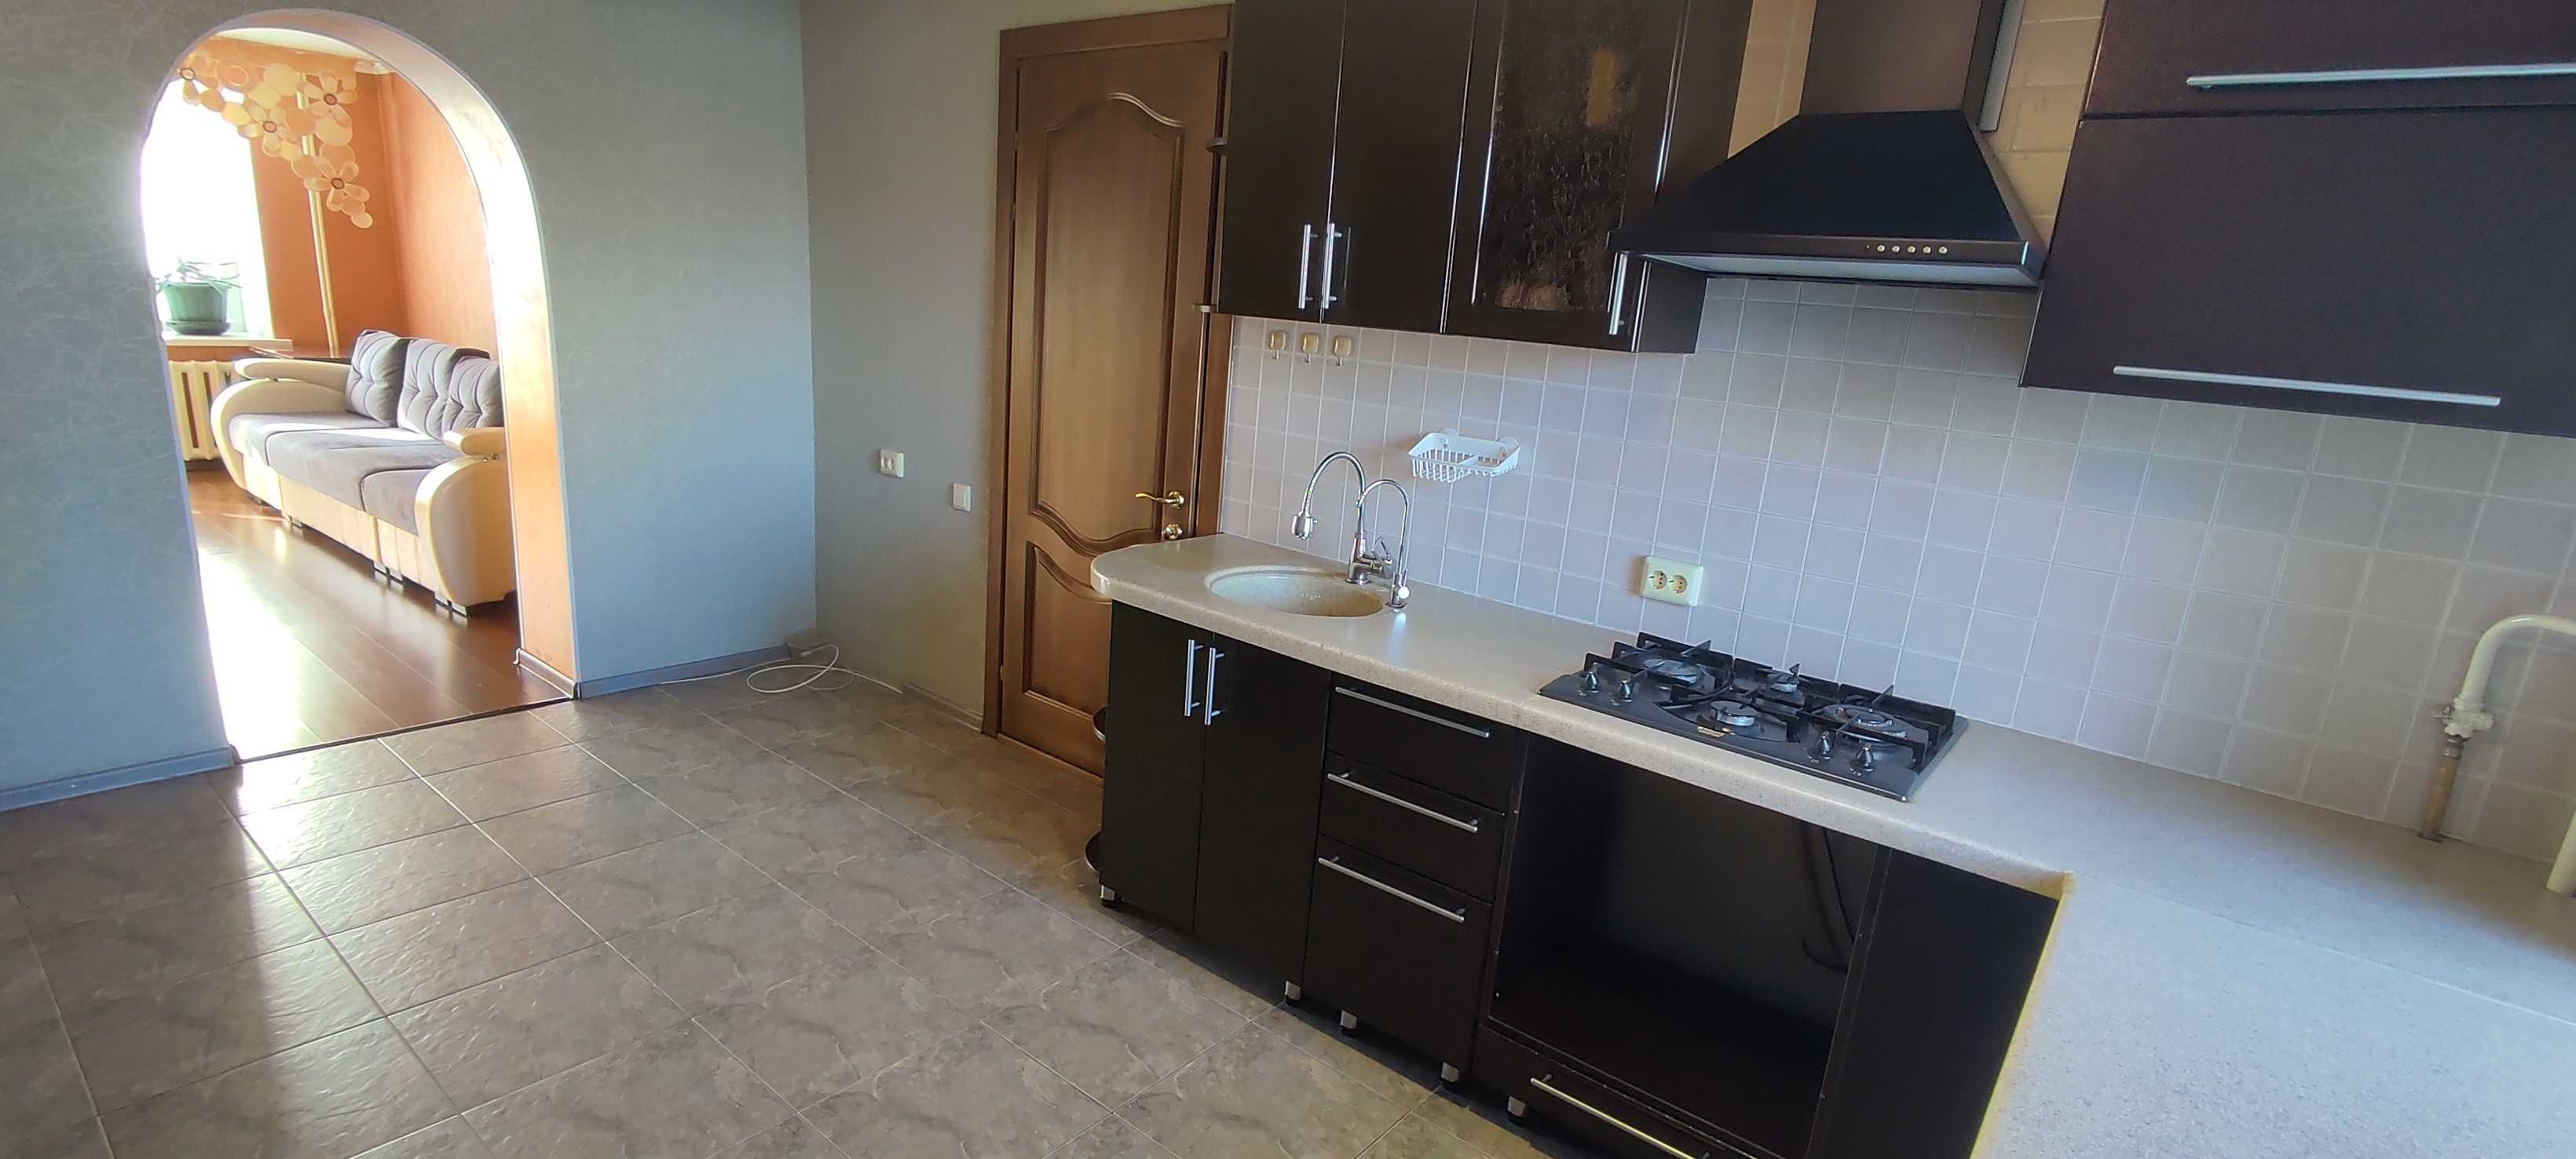 Продам 3-х квартиру с просторной кухней и удобной планировкой